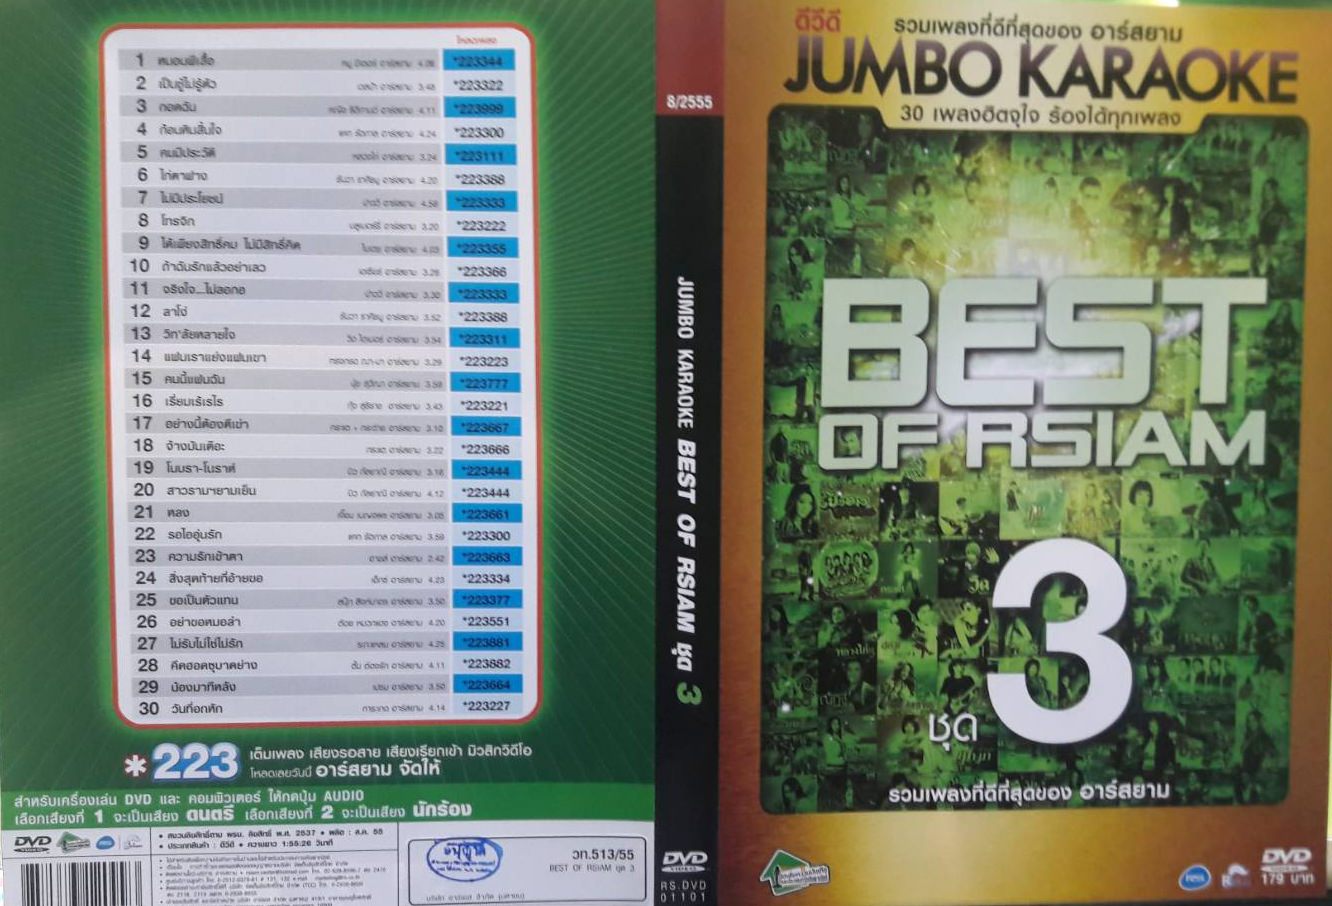 3976 DVD Karaoke Best Of RSIAM VOL.3